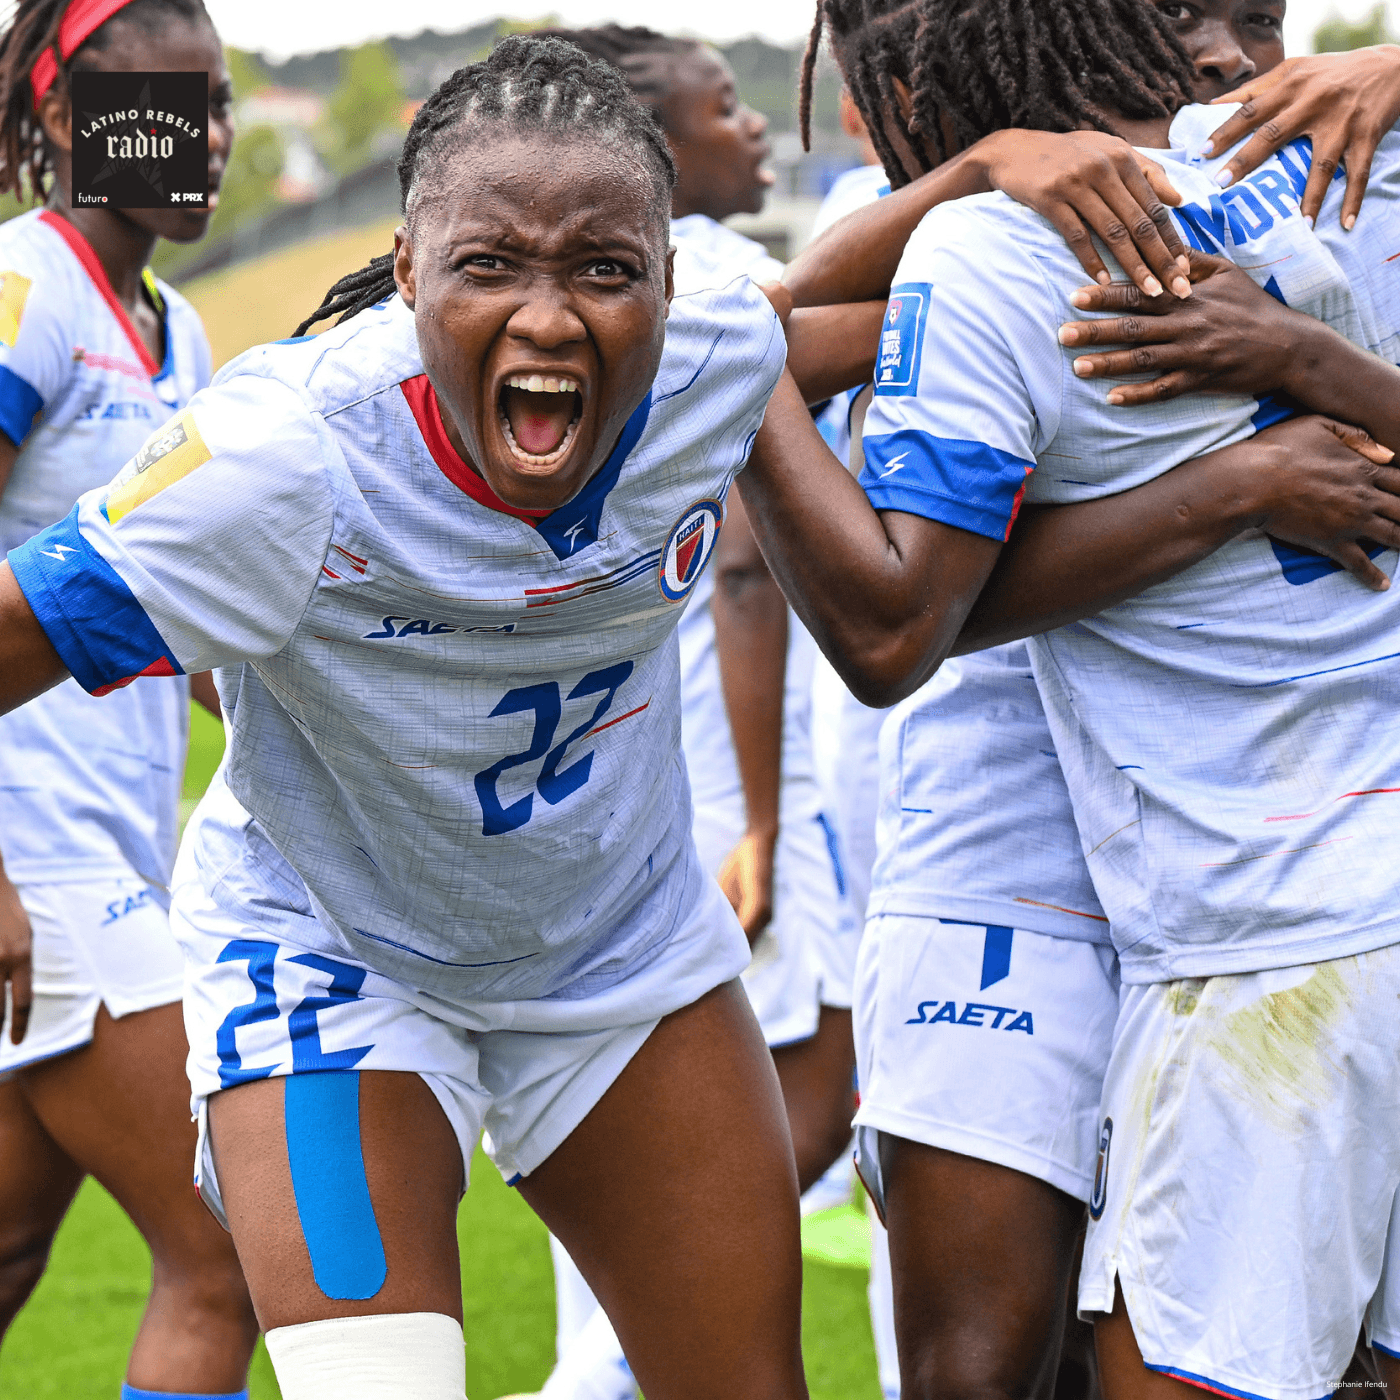 Thumbnail for "Haitian Women Make Soccer History".